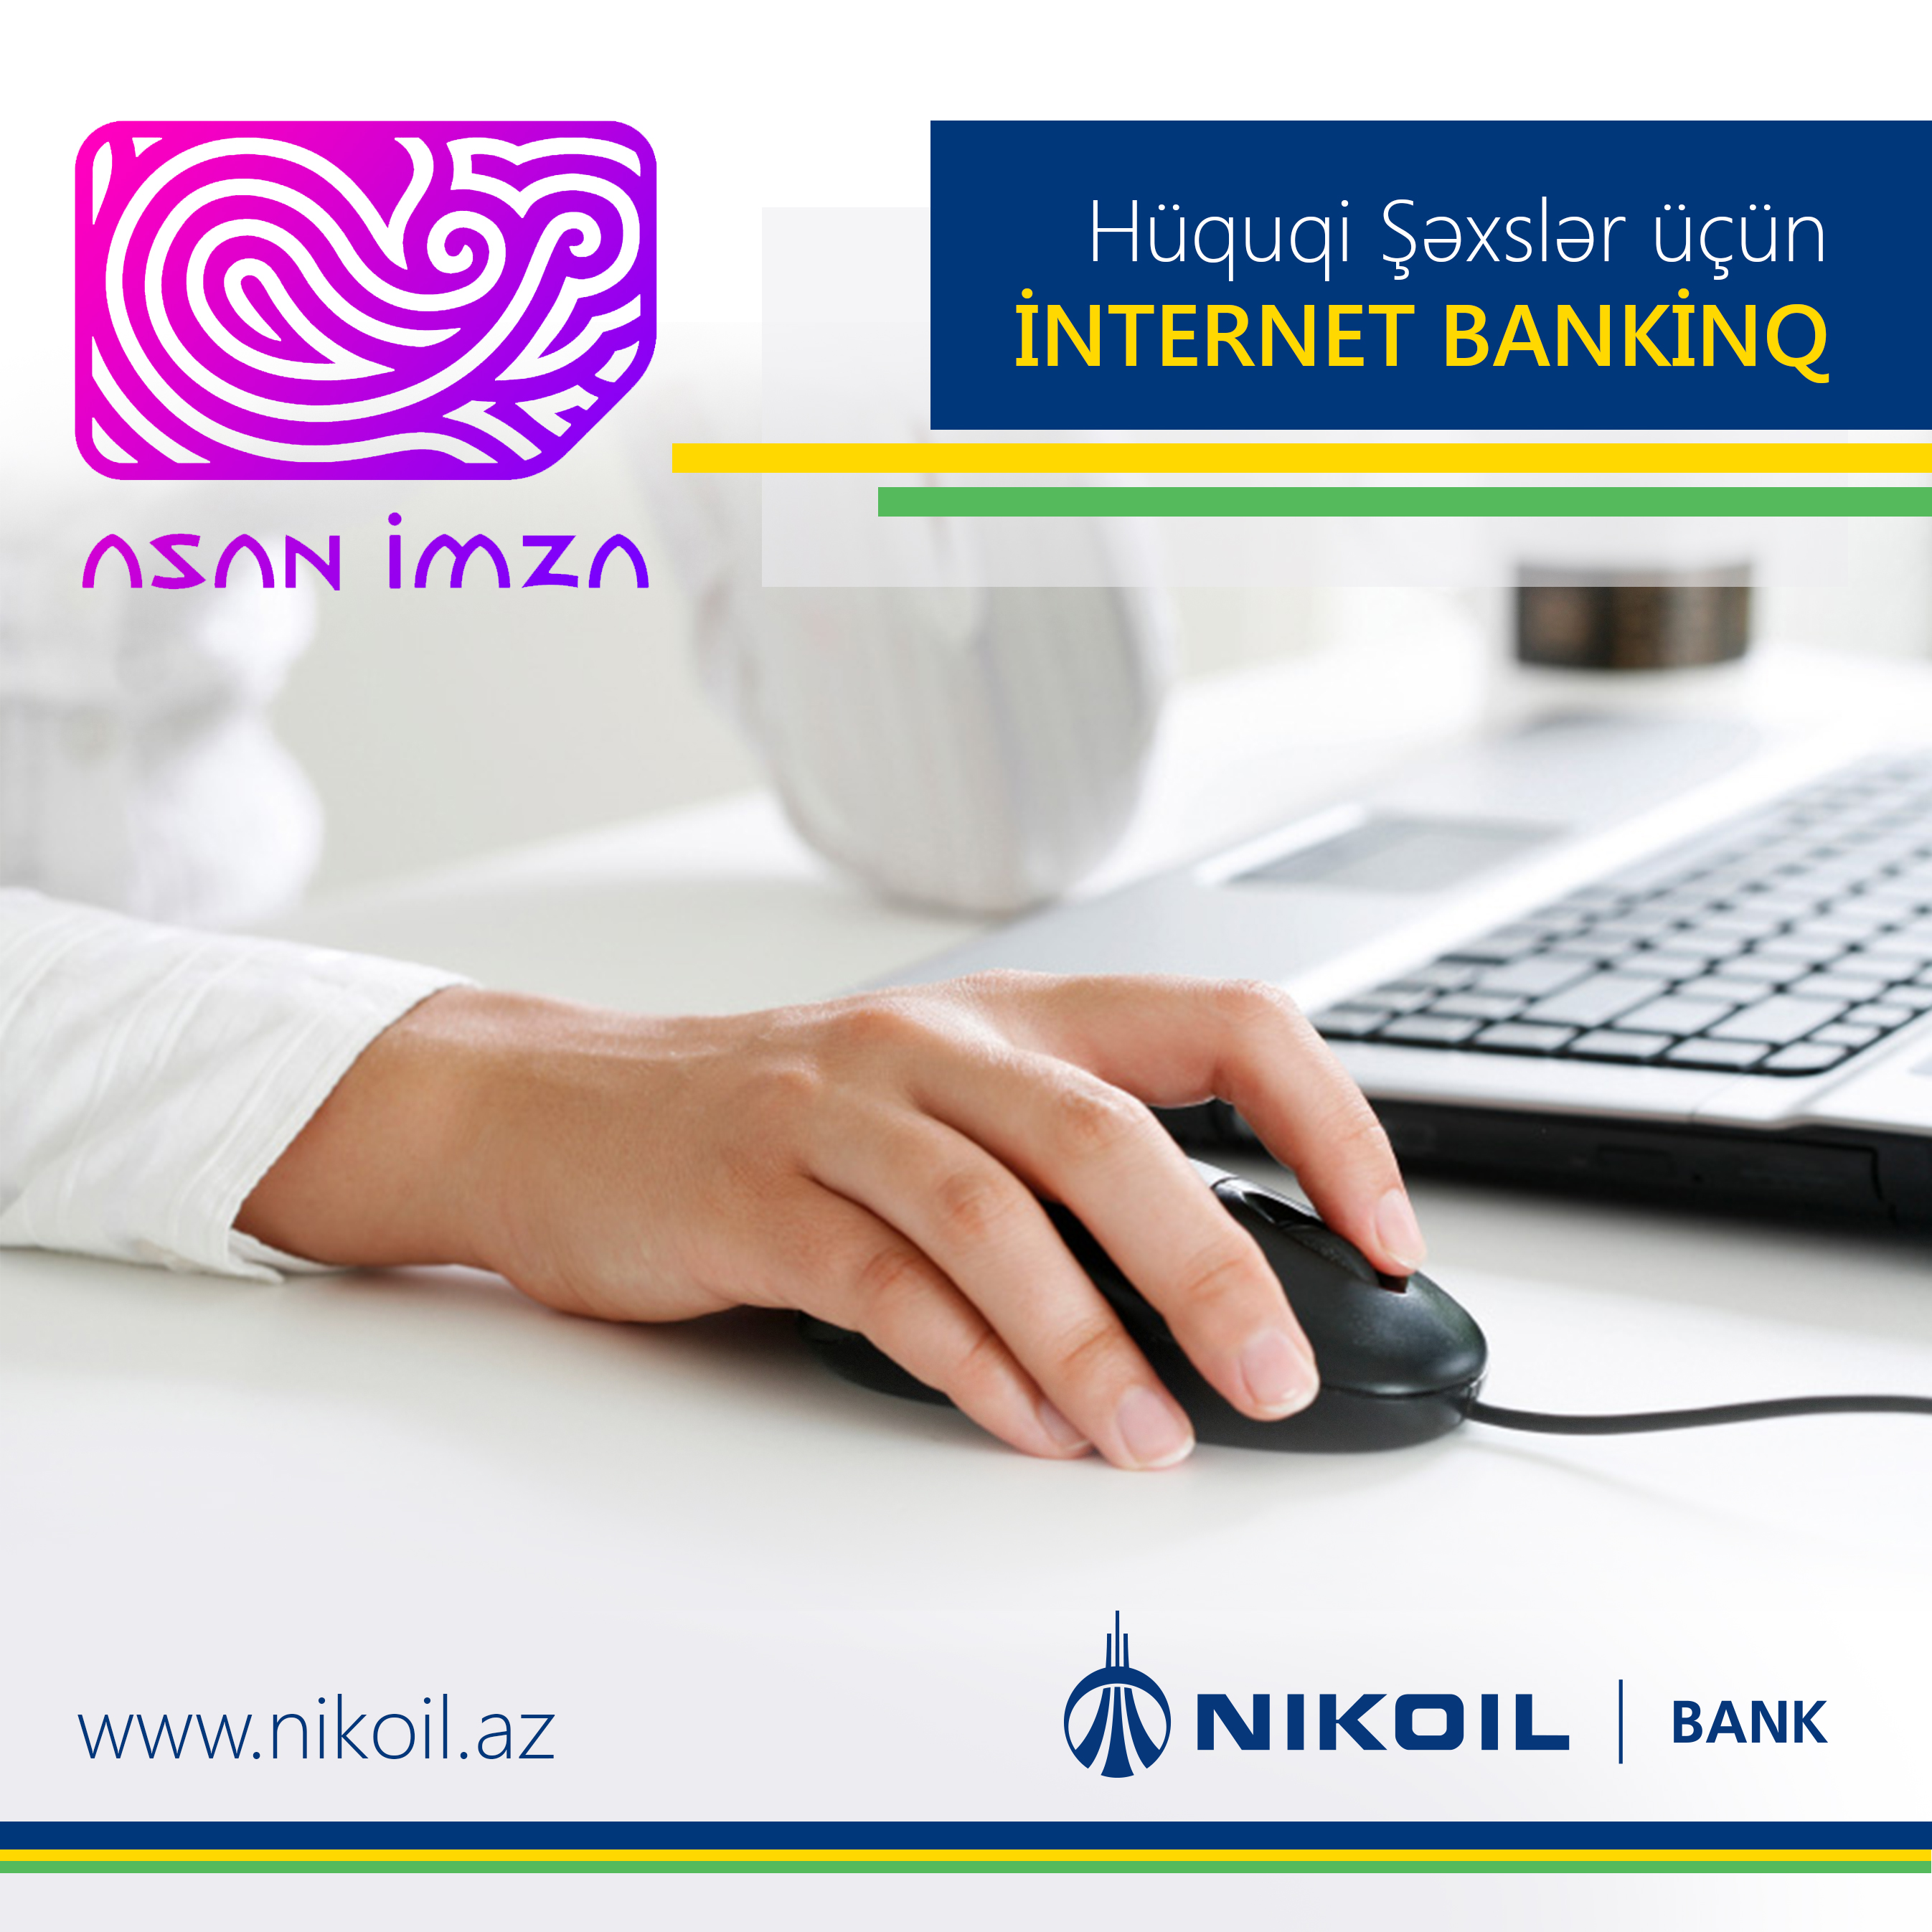 NIKOIL | Bank  запустил услугу Интернет-банкинга для юридических лиц и внедрил «Asan İmza»